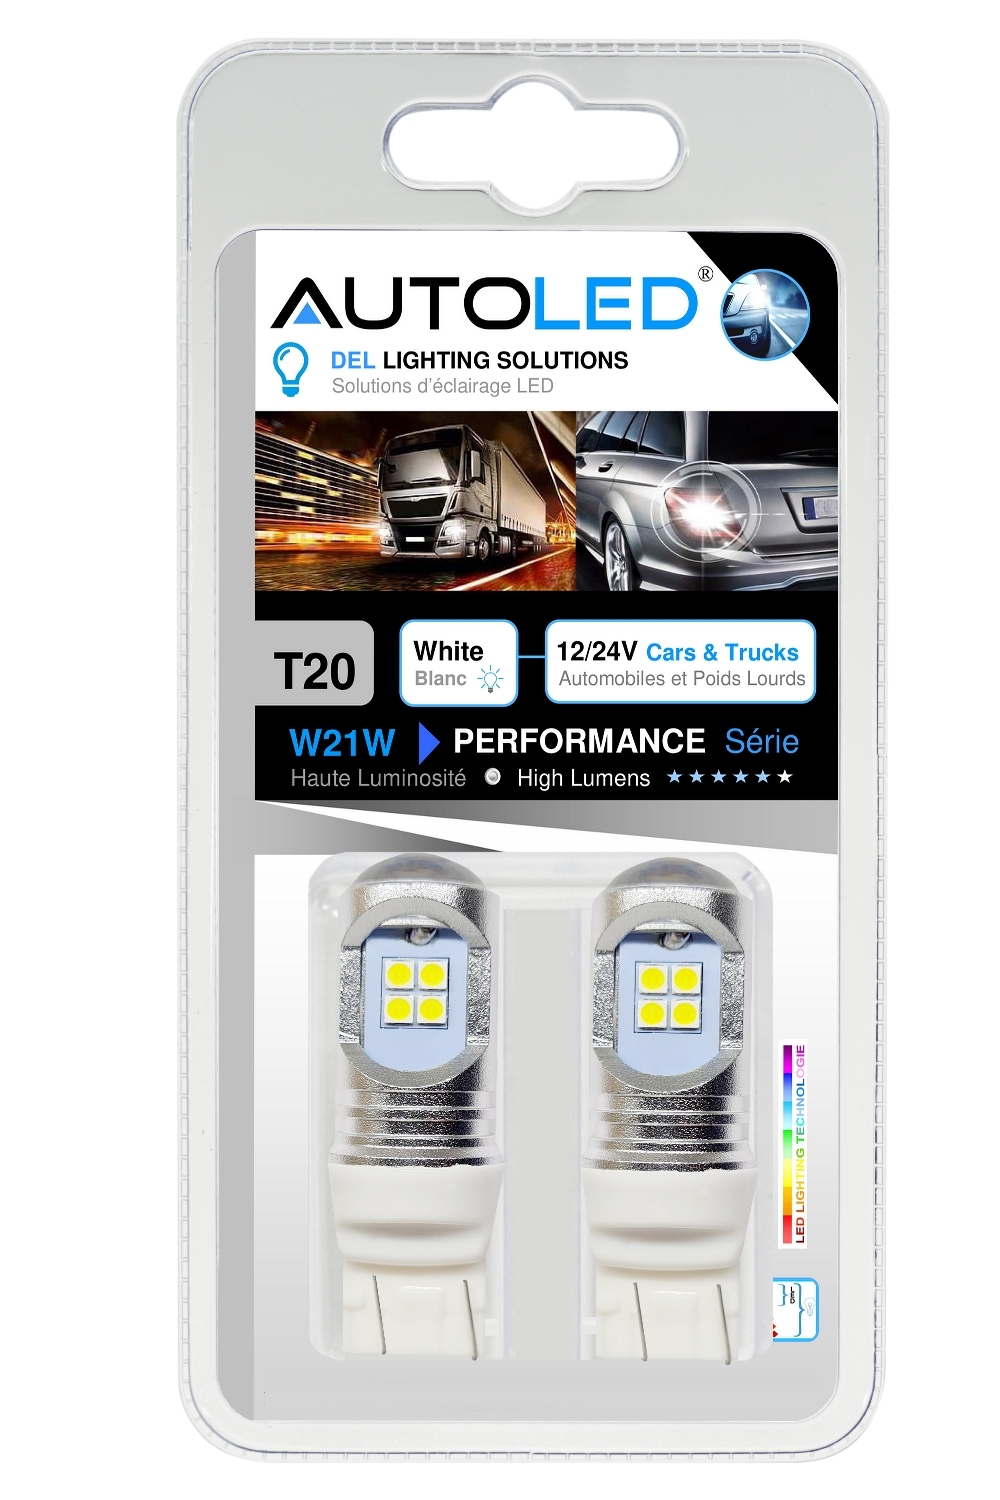 AMPOULE W21-5W 24V LED CAMION – 12V AUTOMOBILE -autoled-0306.5